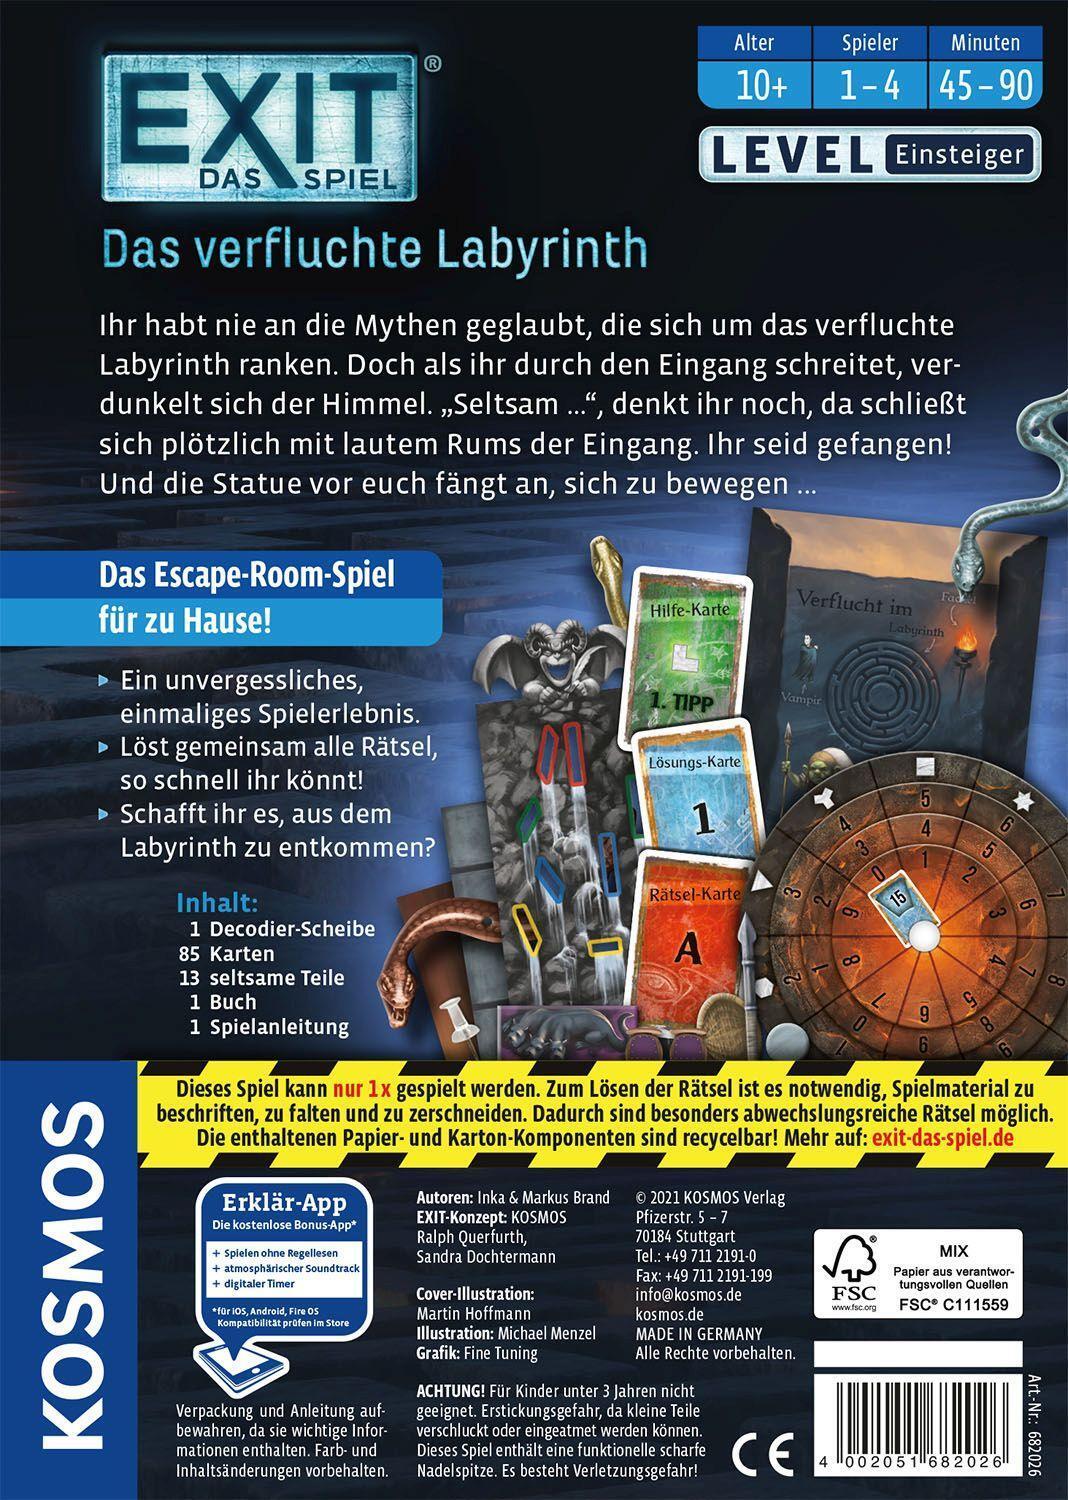 Bild: 4002051682026 | EXIT® - Das Spiel: Das verfluchte Labyrinth | Inka Brand (u. a.)